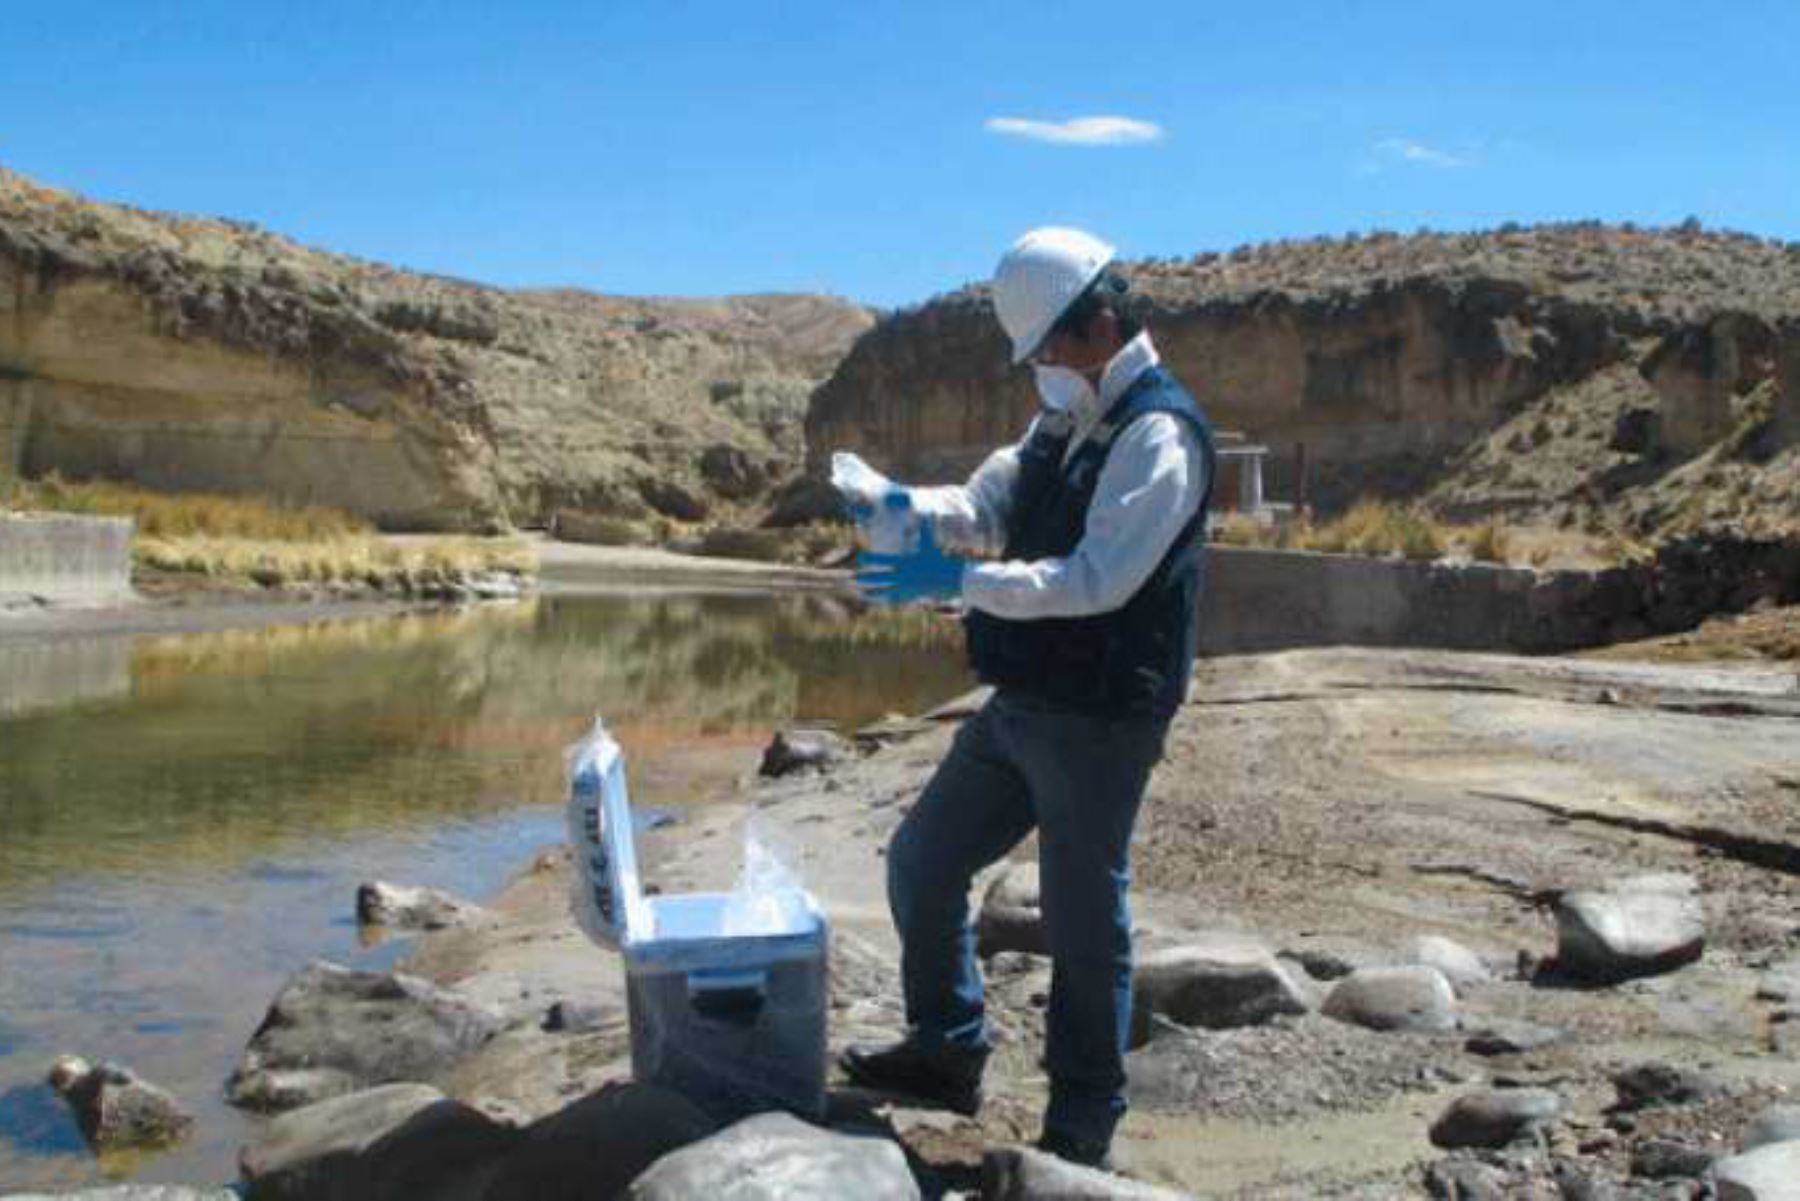 En salvaguarda de la seguridad ambiental y la salud poblacional, el Ministerio de Agricultura y Riego, declaró el estado de emergencia de recursos hídricos por 60 días ante el posible riesgo de afectación de la calidad del agua del río Moche, en el distrito de Quiruvilca, provincia de Santiago de Chuco, región La Libertad.